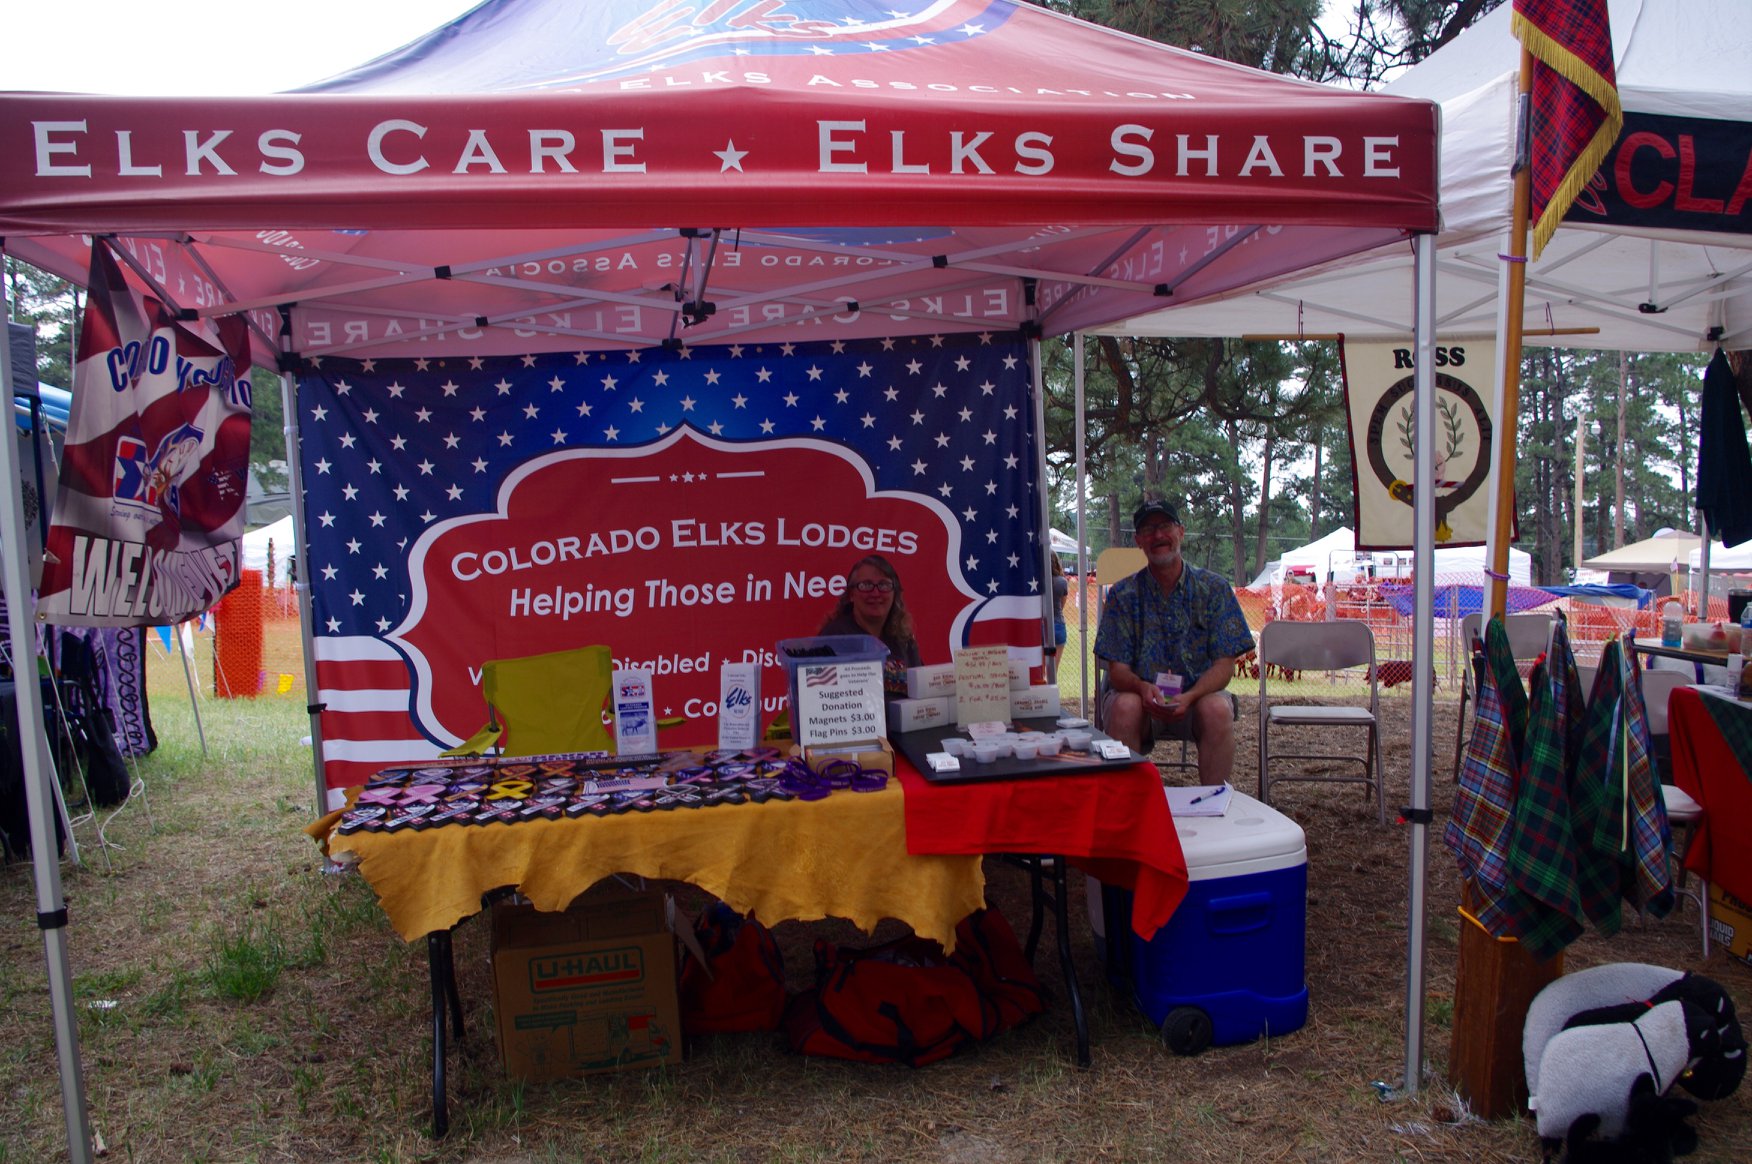 Colorado Elks Lodge